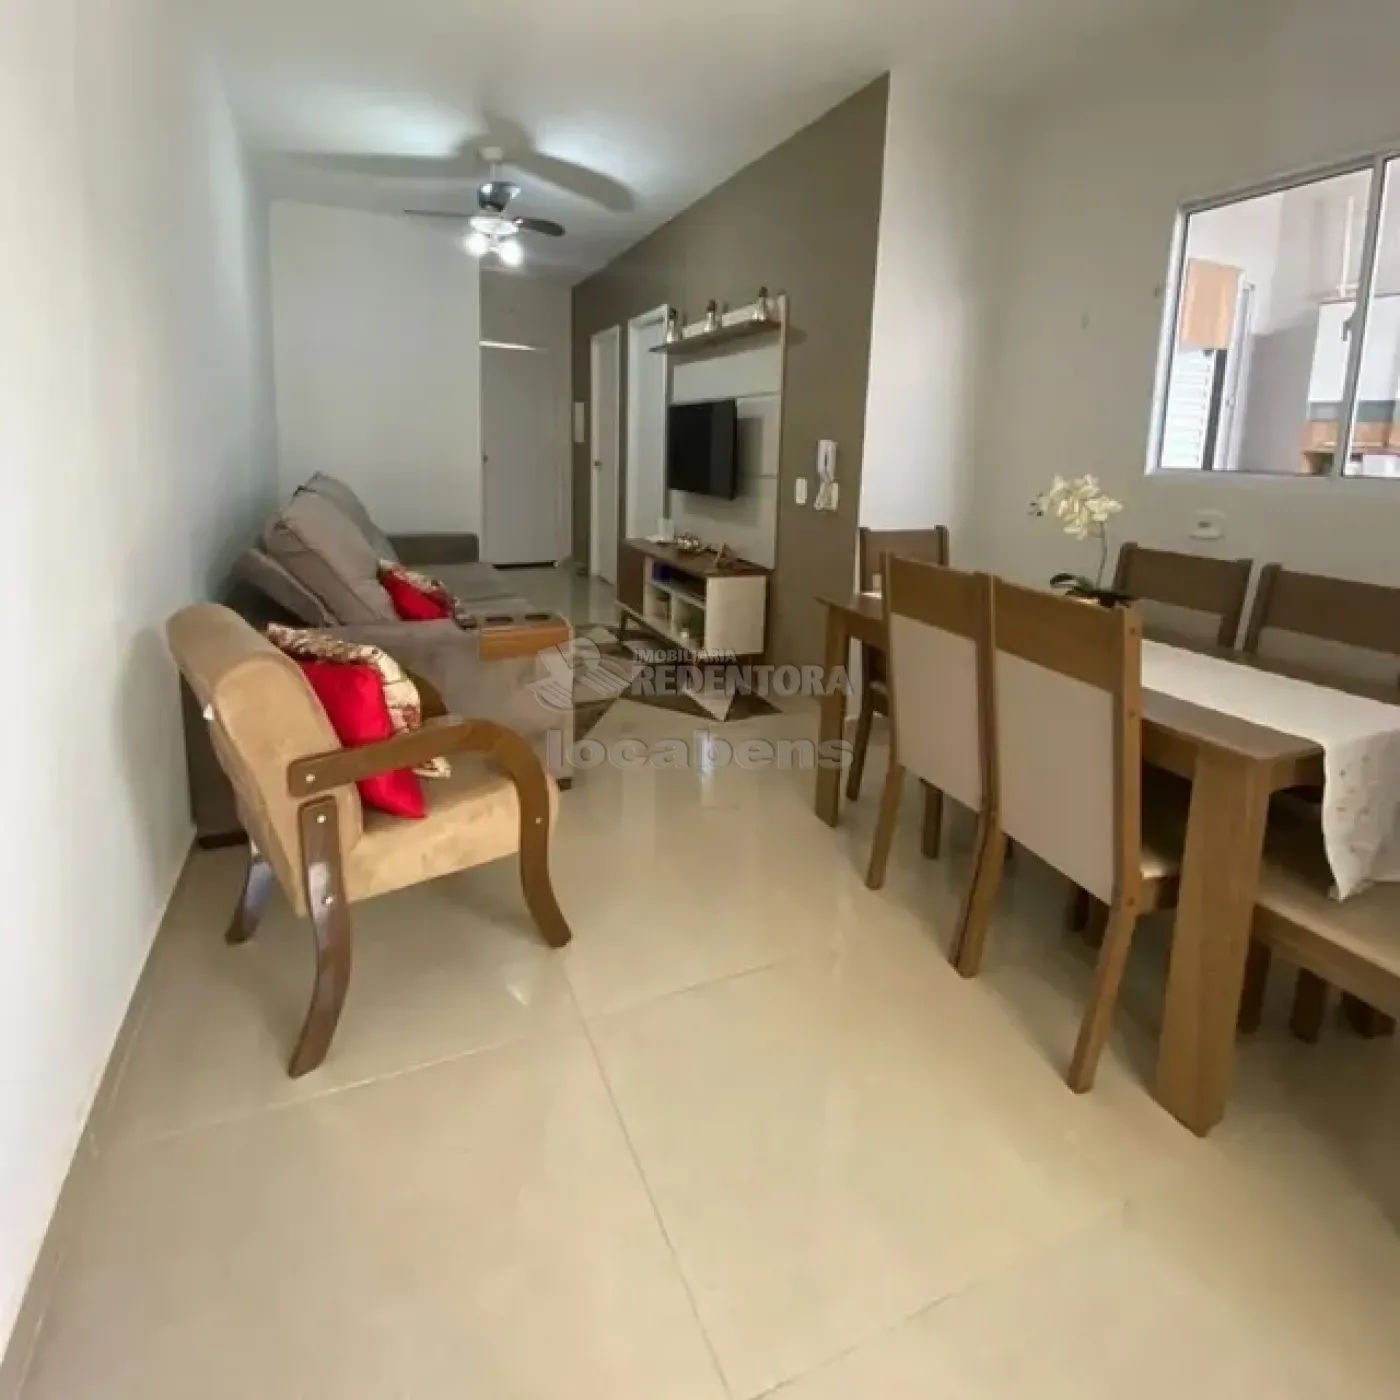 Comprar Casa / Condomínio em São José do Rio Preto R$ 245.000,00 - Foto 6